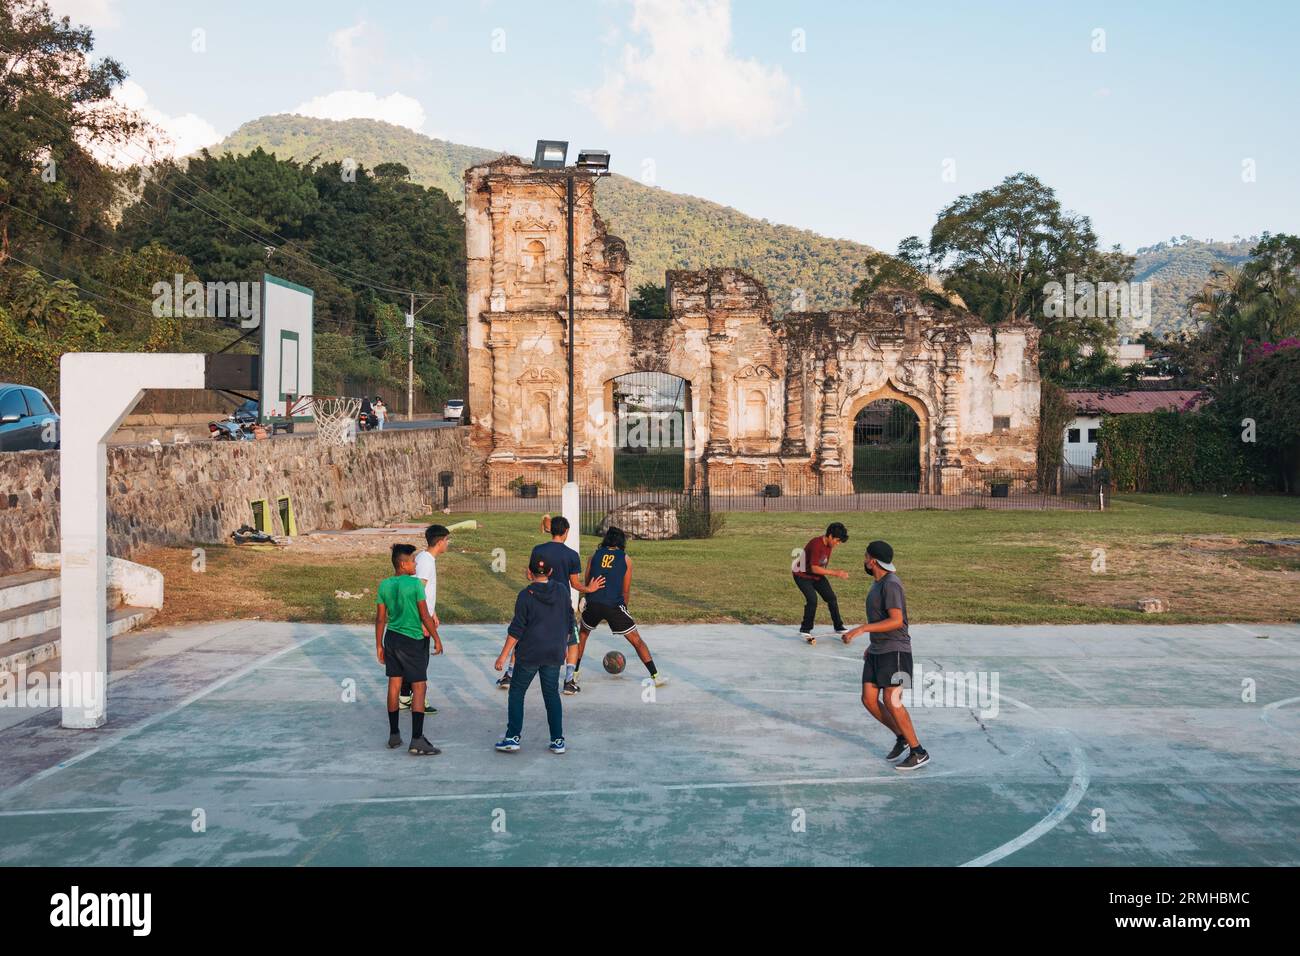 Les enfants jouent au basket-ball sur un court public, avec les ruines d'un bâtiment colonial espagnol reposant derrière, à Antigua Guatemala Banque D'Images